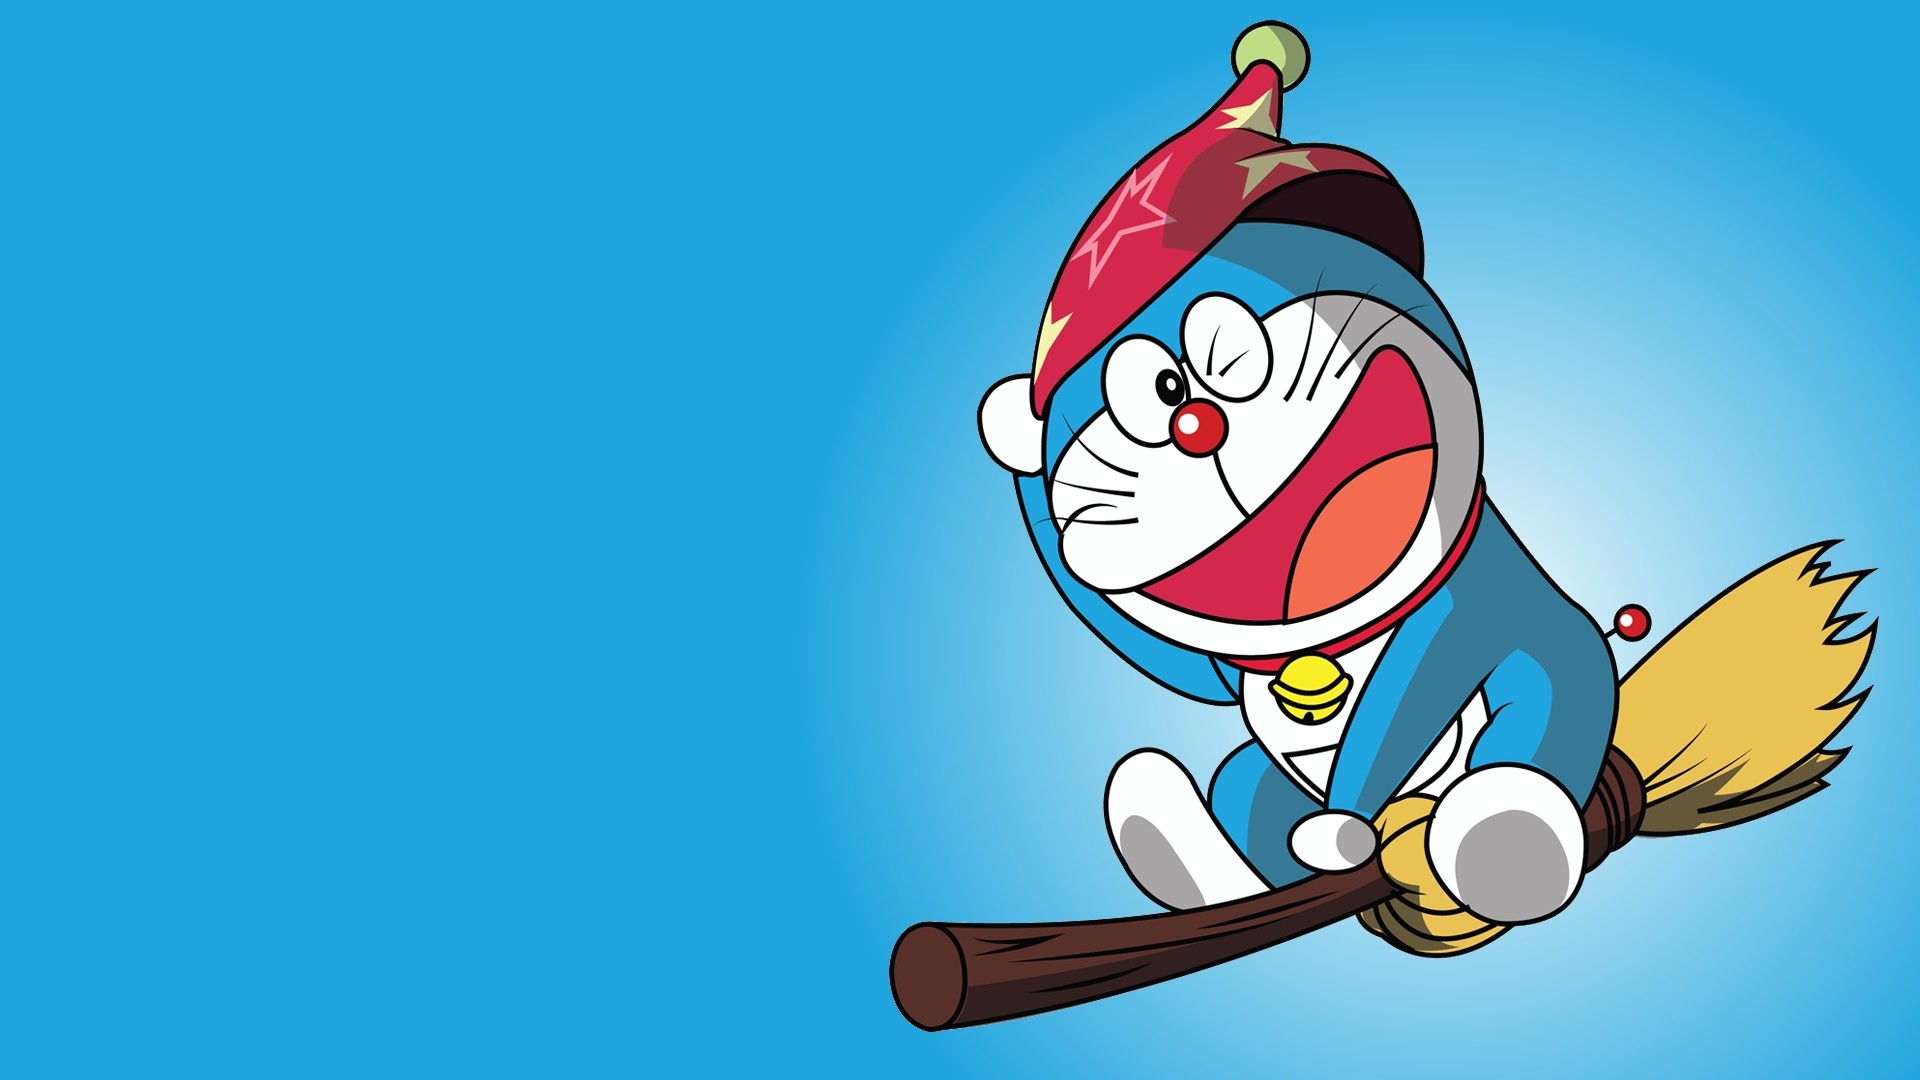 Chào mừng bạn đến với bộ sưu tập hình nền điện thoại với nhân vật Doraemon trong hoạt hình anime. Bạn sẽ thích ngắm nhìn những hình ảnh đẹp mắt và cảm nhận được không khí vui tươi của Doraemon và bạn bè.